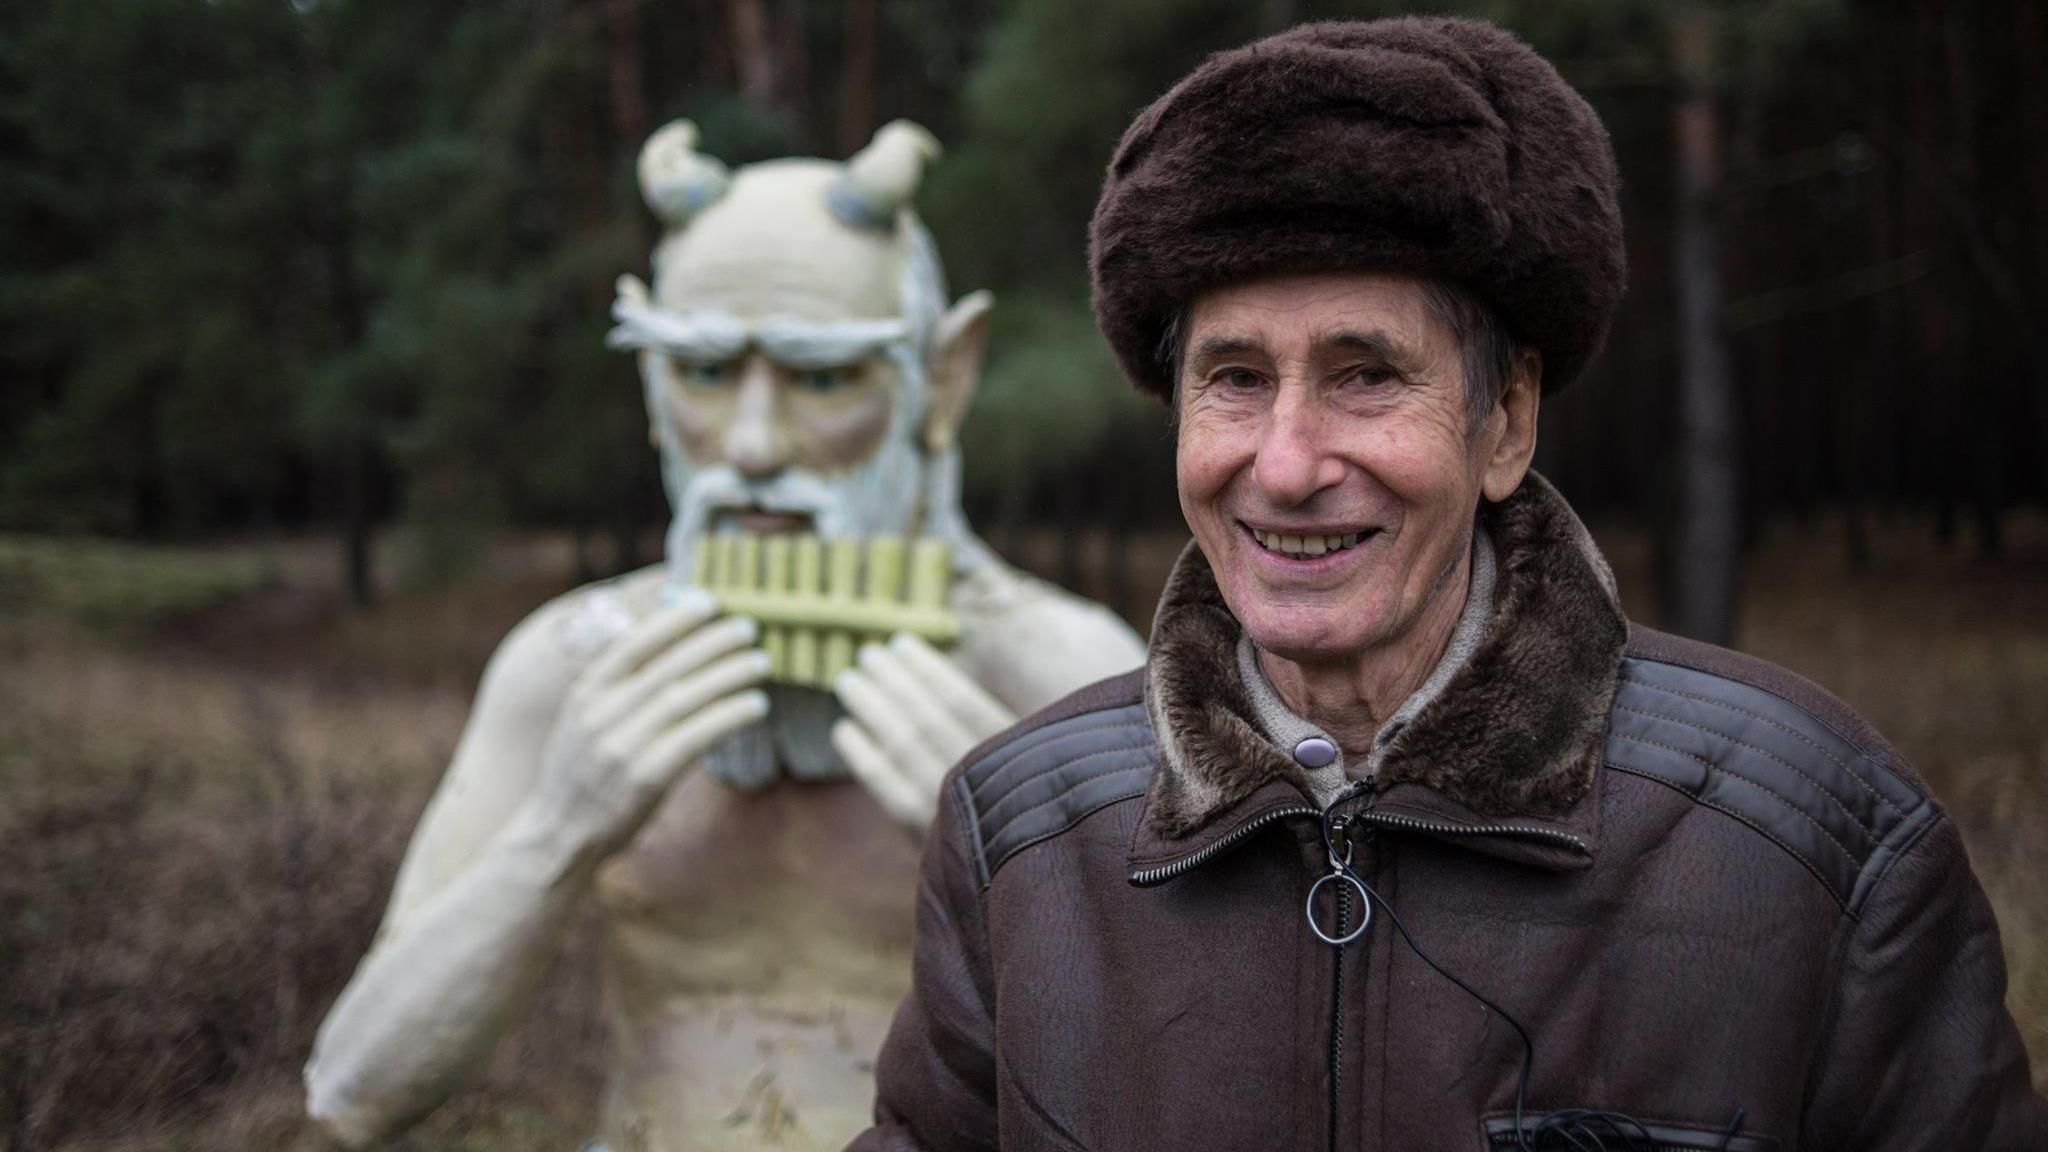 Як у соцмережах за 3 години зібрали гроші на мрію 79-річного скульптора: зворушлива історія